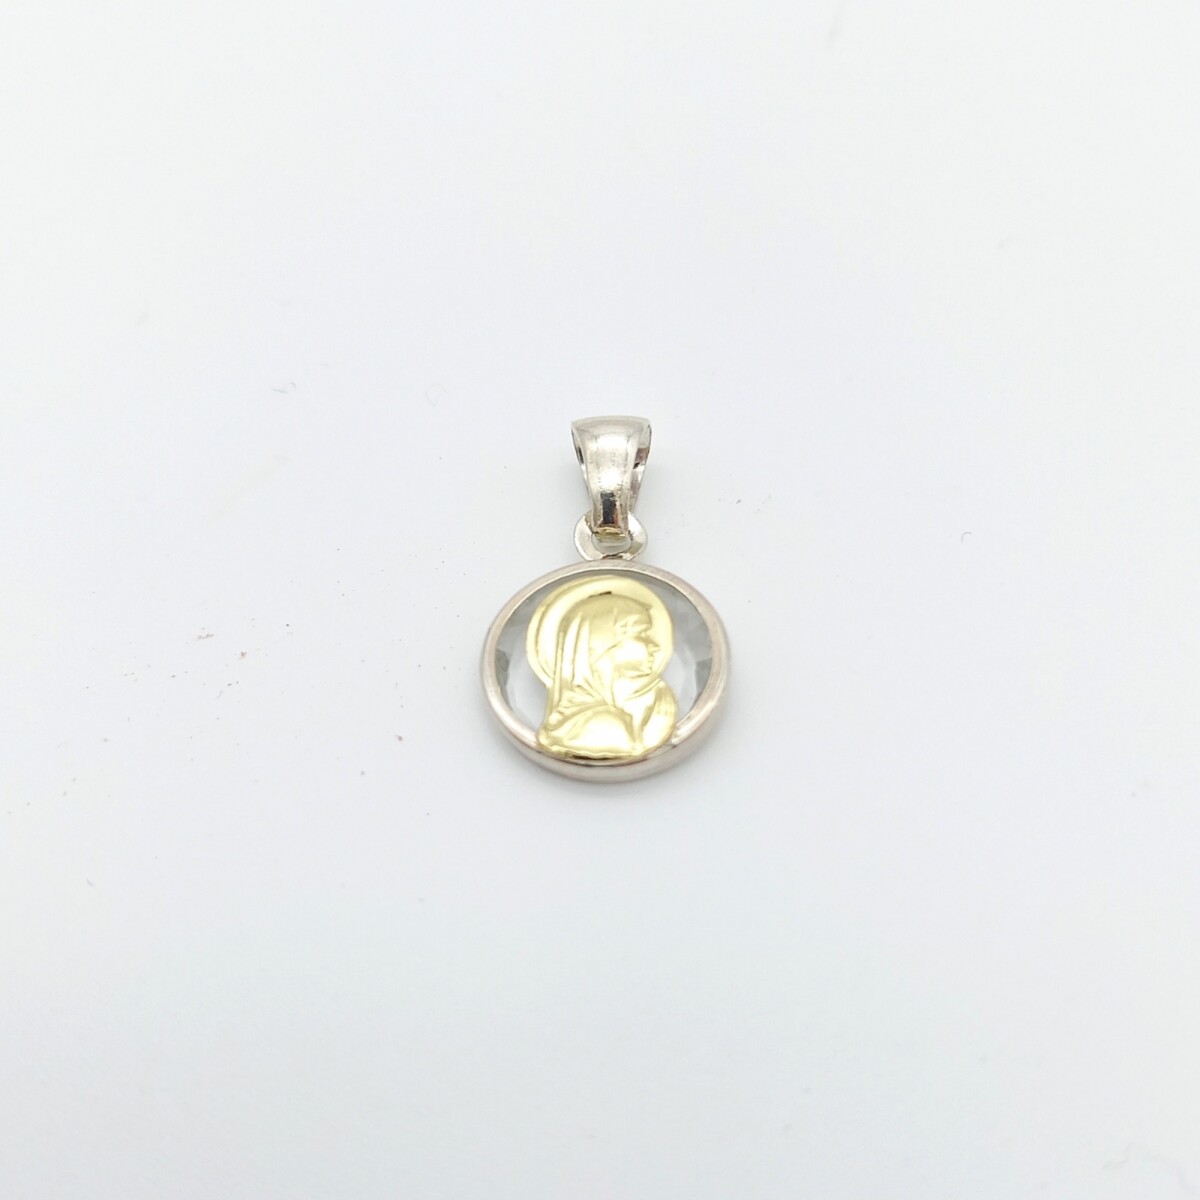 Medalla religiosa de plata 925, Virgen Niña cristal con manto, detalles de double en oro 18Ktes, diámetro 12mm. 